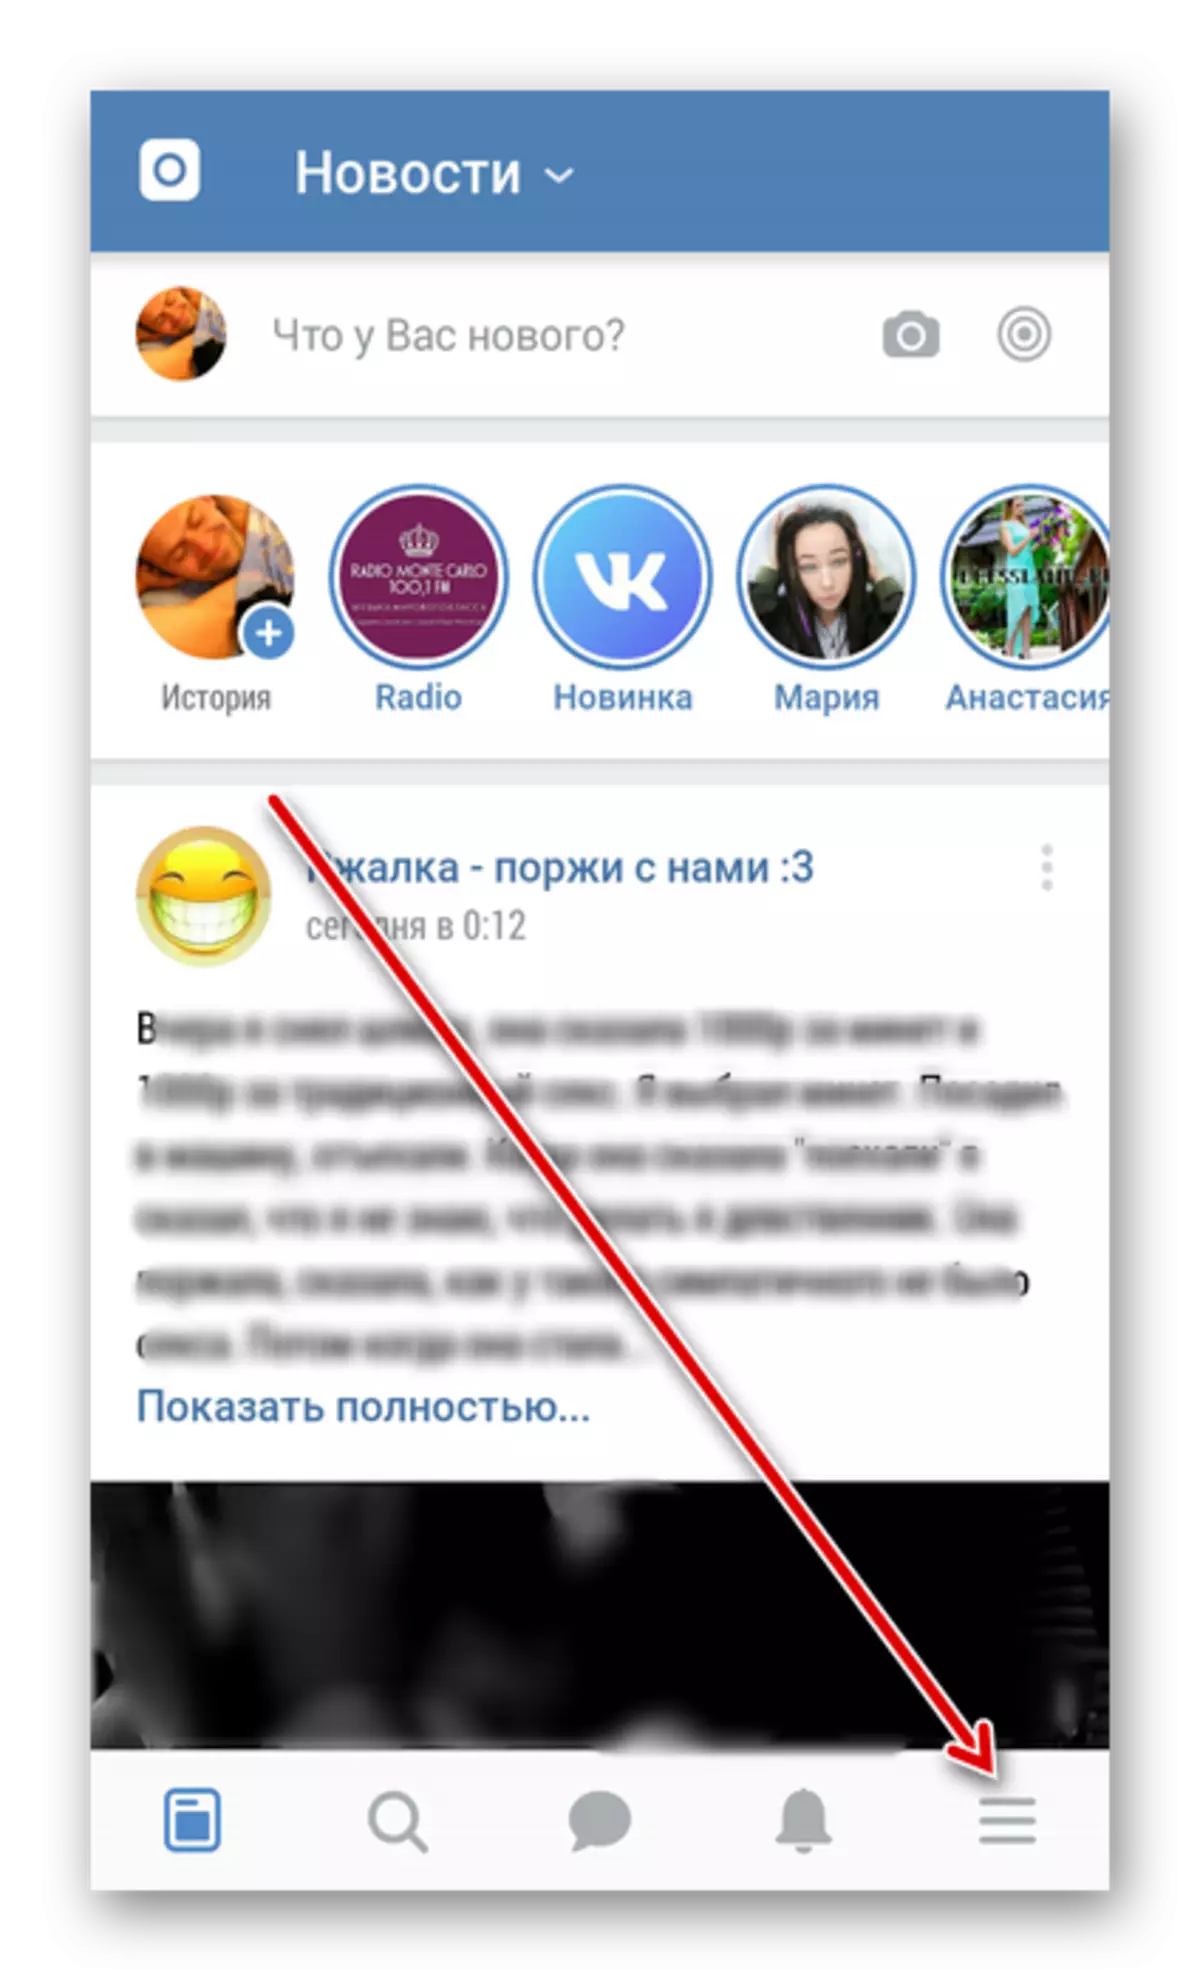 Ga naar Tools in Vkontakte